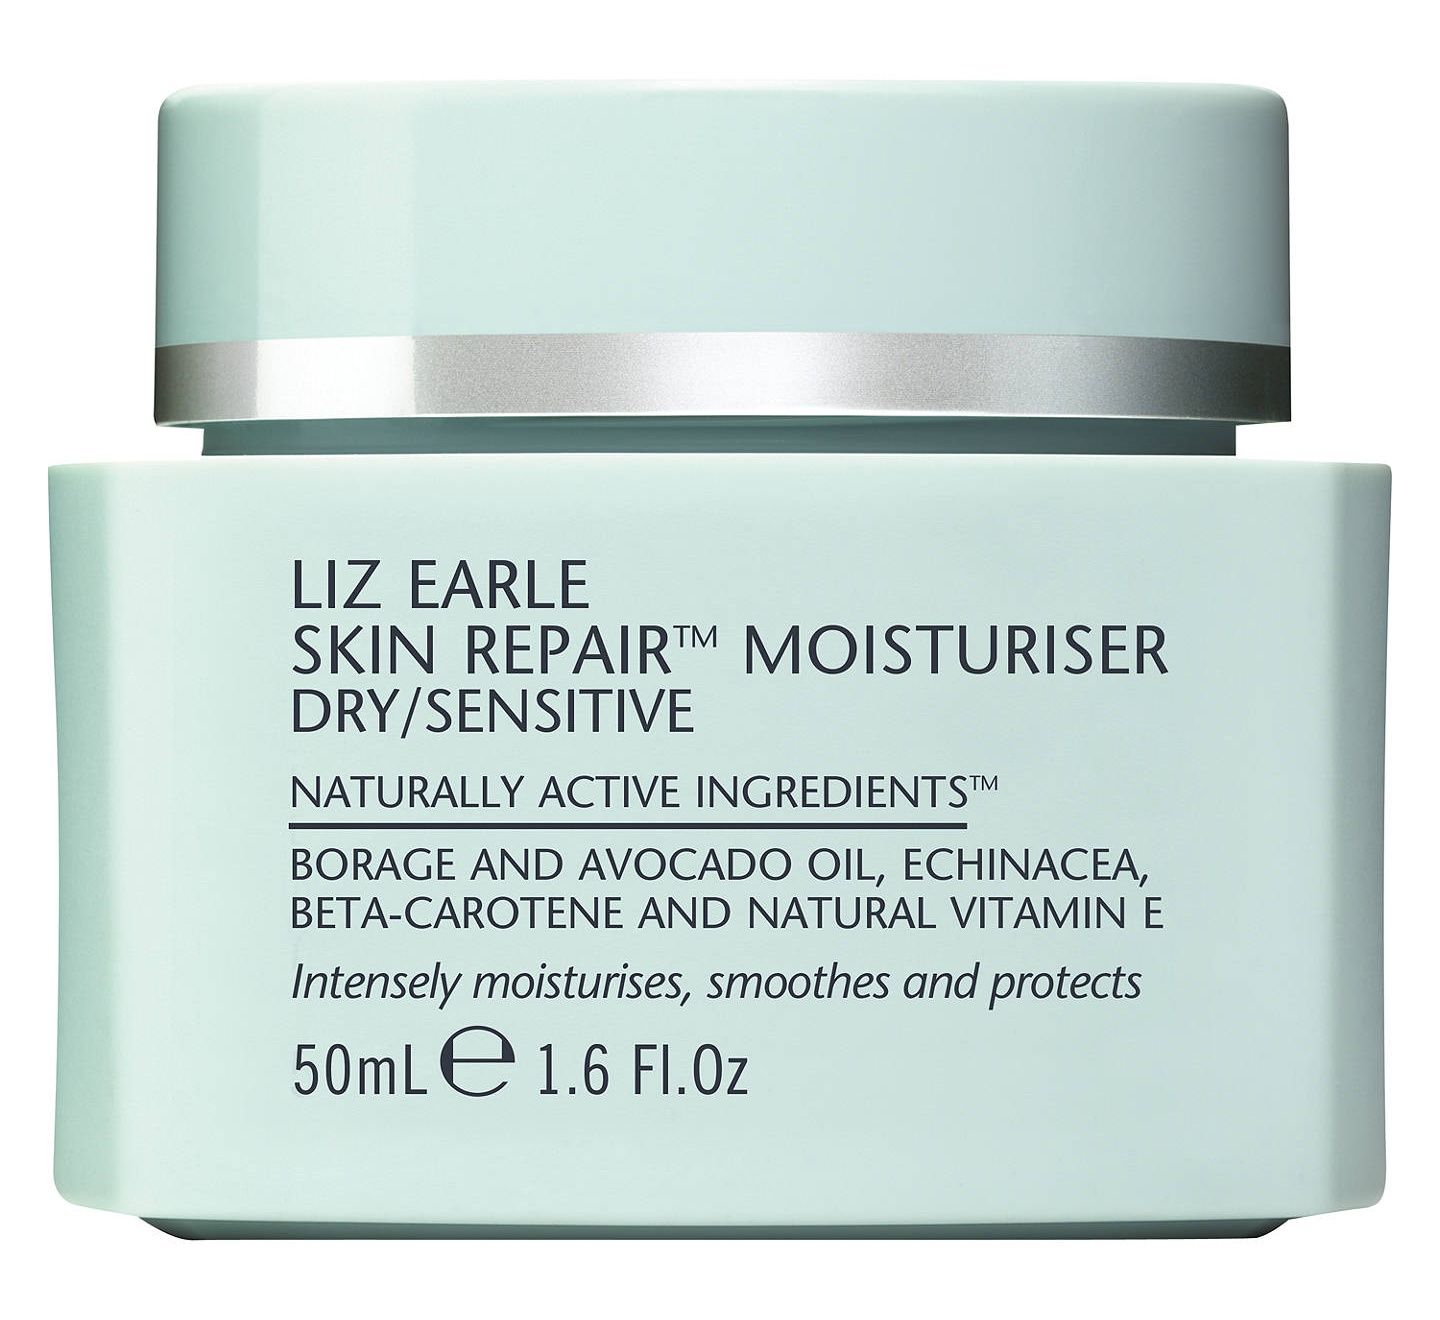 Liz Earle Skin Repair Moisturiser Dry/Sensitive